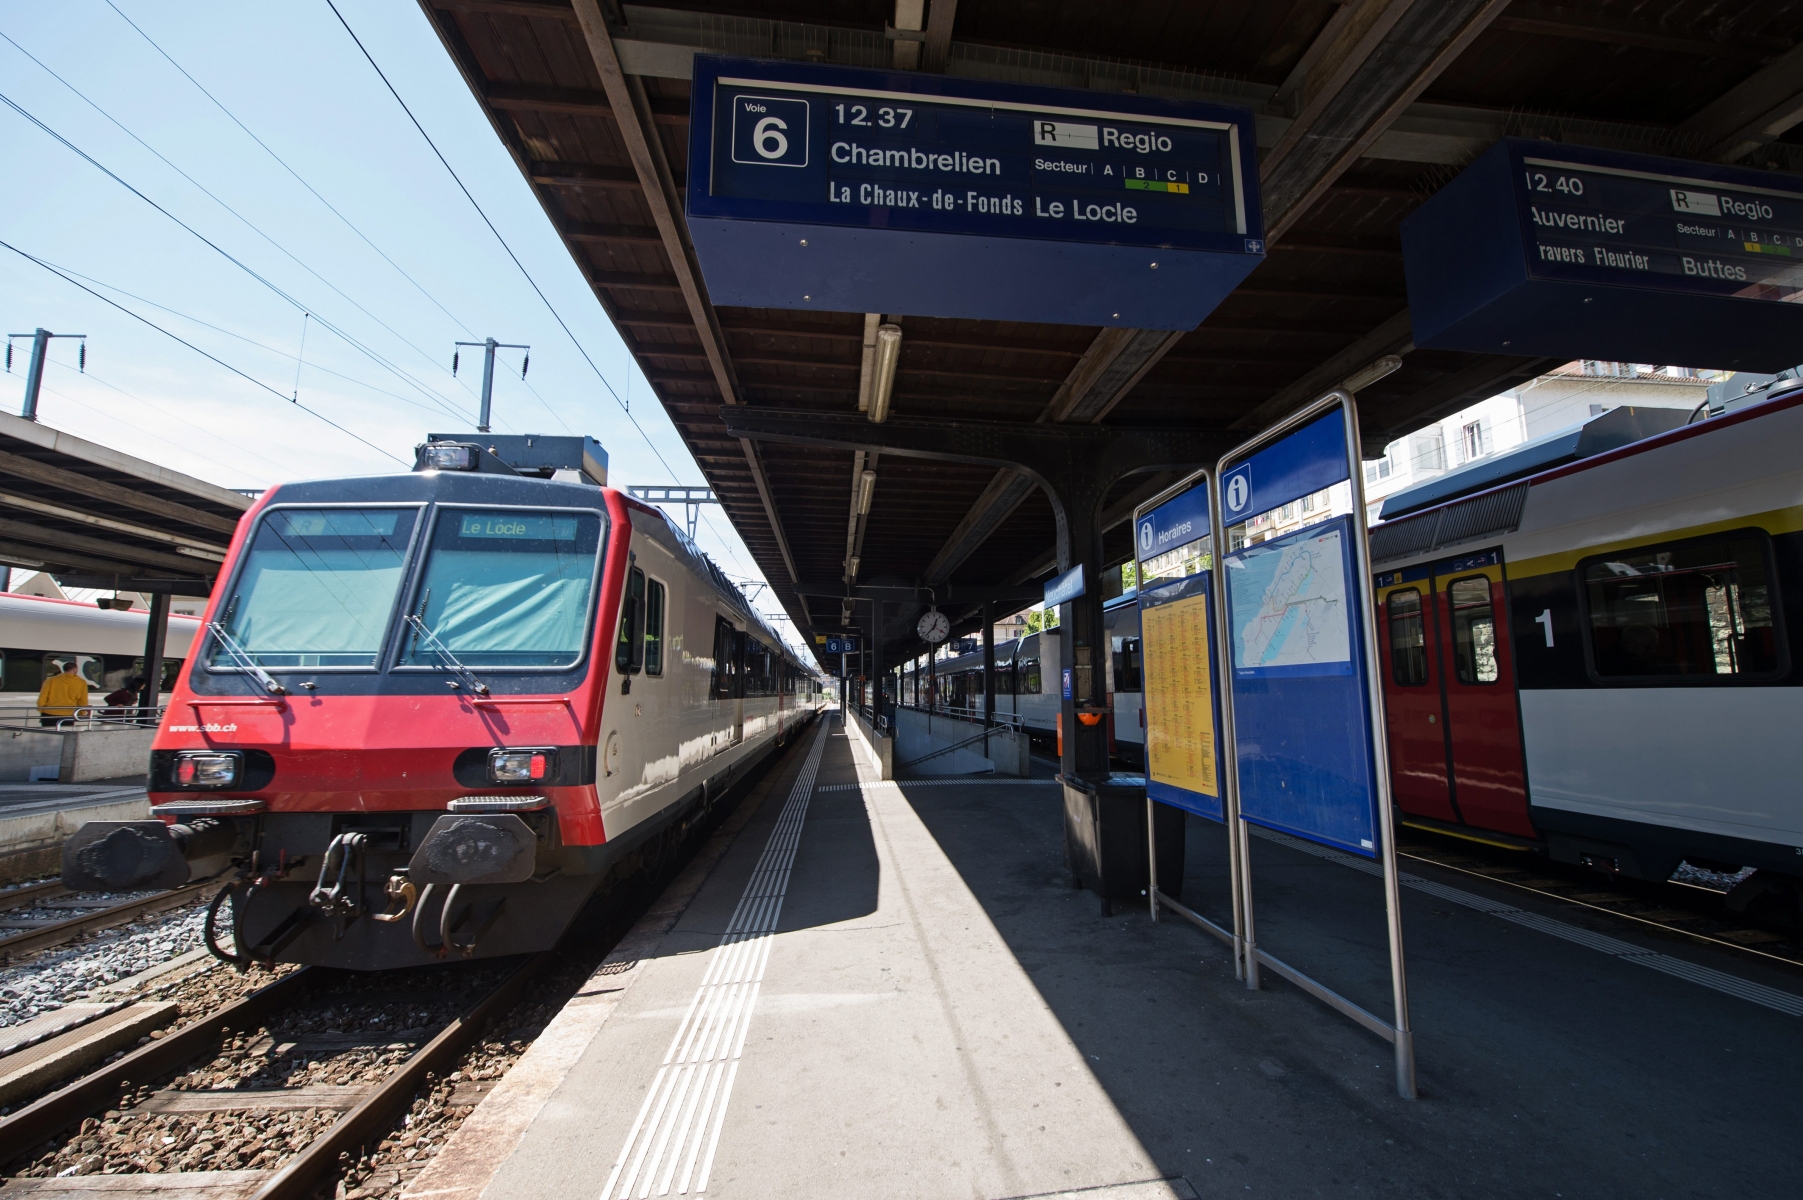 Train, transrun, gare de neuchatel

Neuchatel, le 5 mai 2014
Photo: David Marchon
